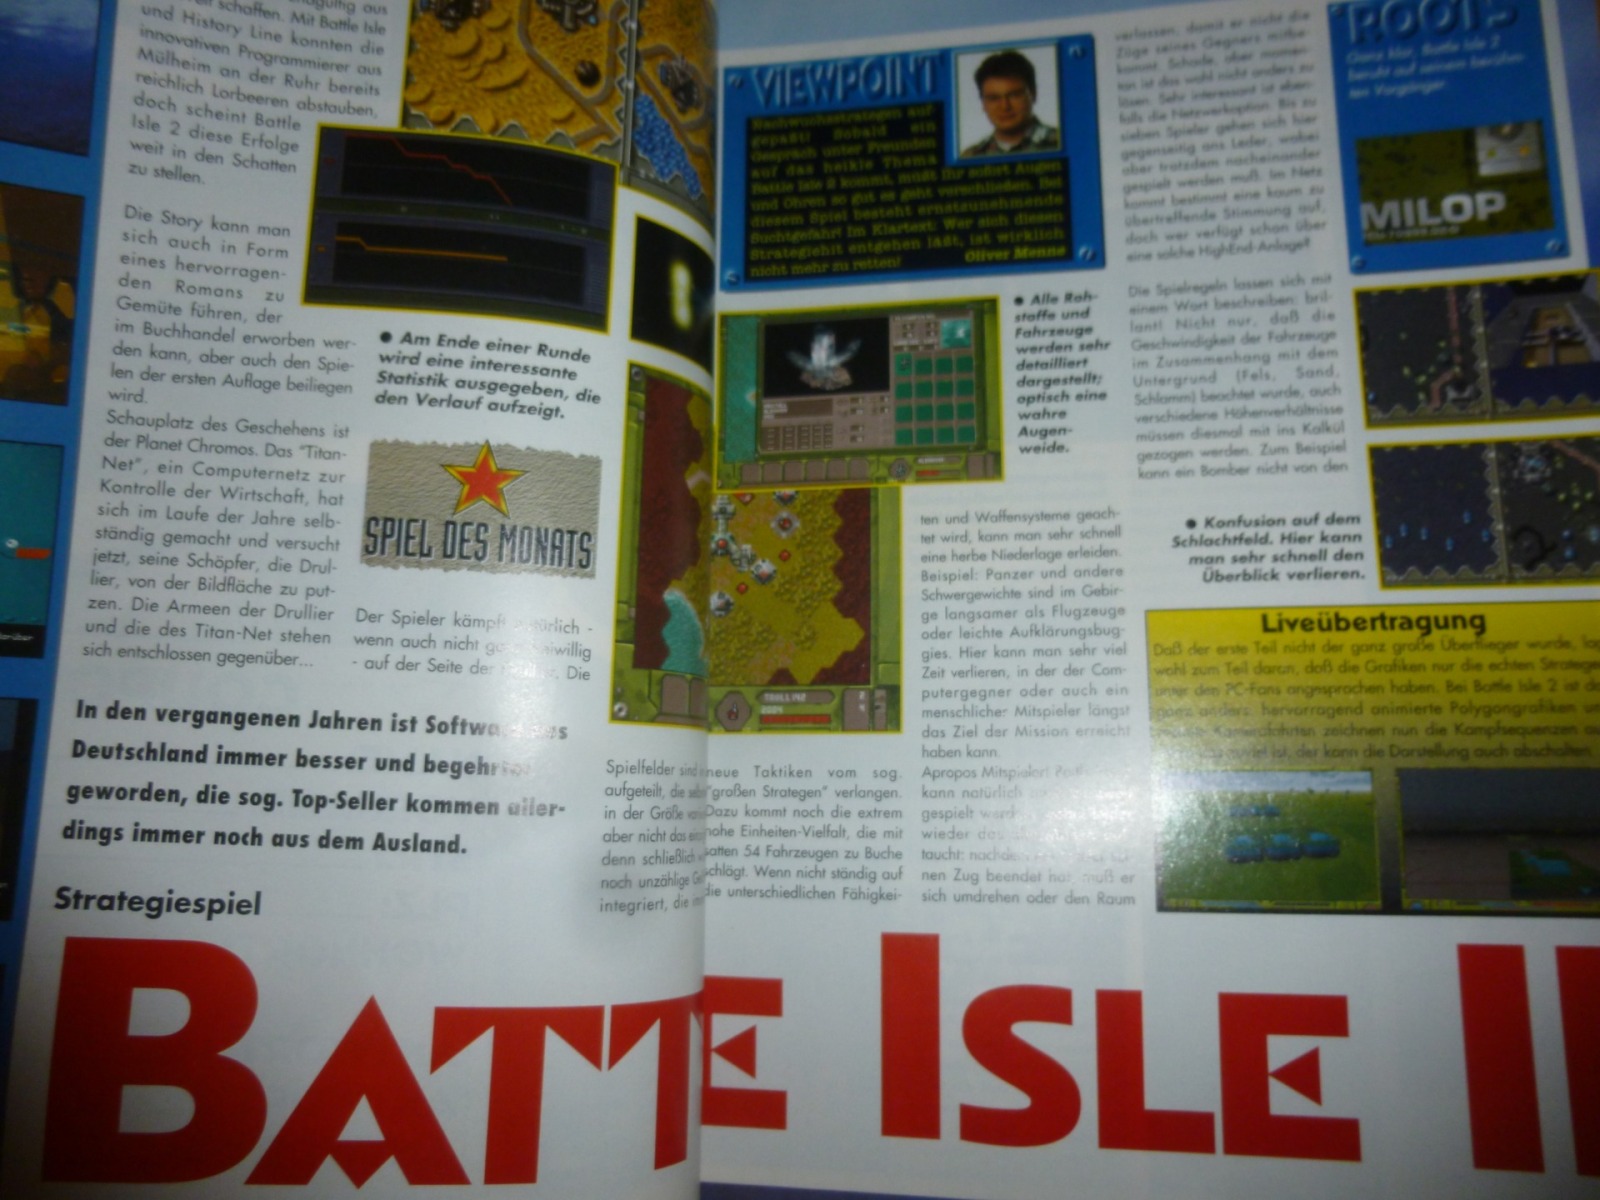 Play Time - Das Computer- und Videospiele-Magazin - Ausgabe 4/94 1994 12